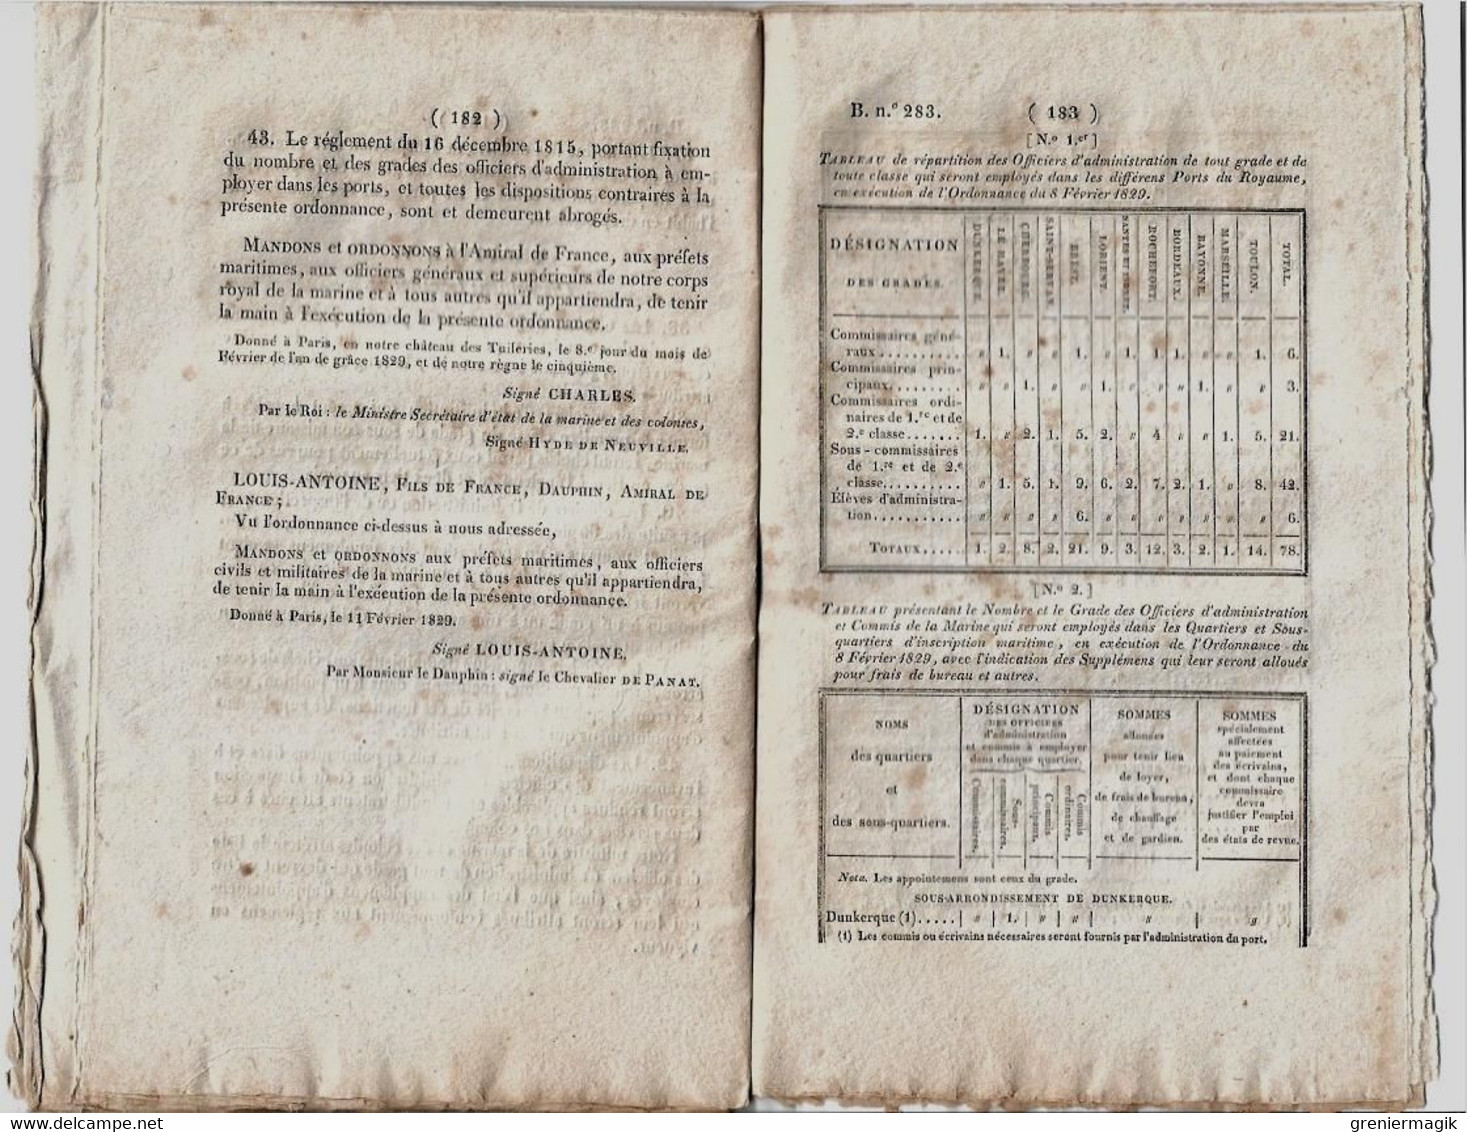 Bulletin des Lois 283 1829 Rétablissement des Préfectures maritimes/Administration de la Marine/Legs Talleyrand-Périgord